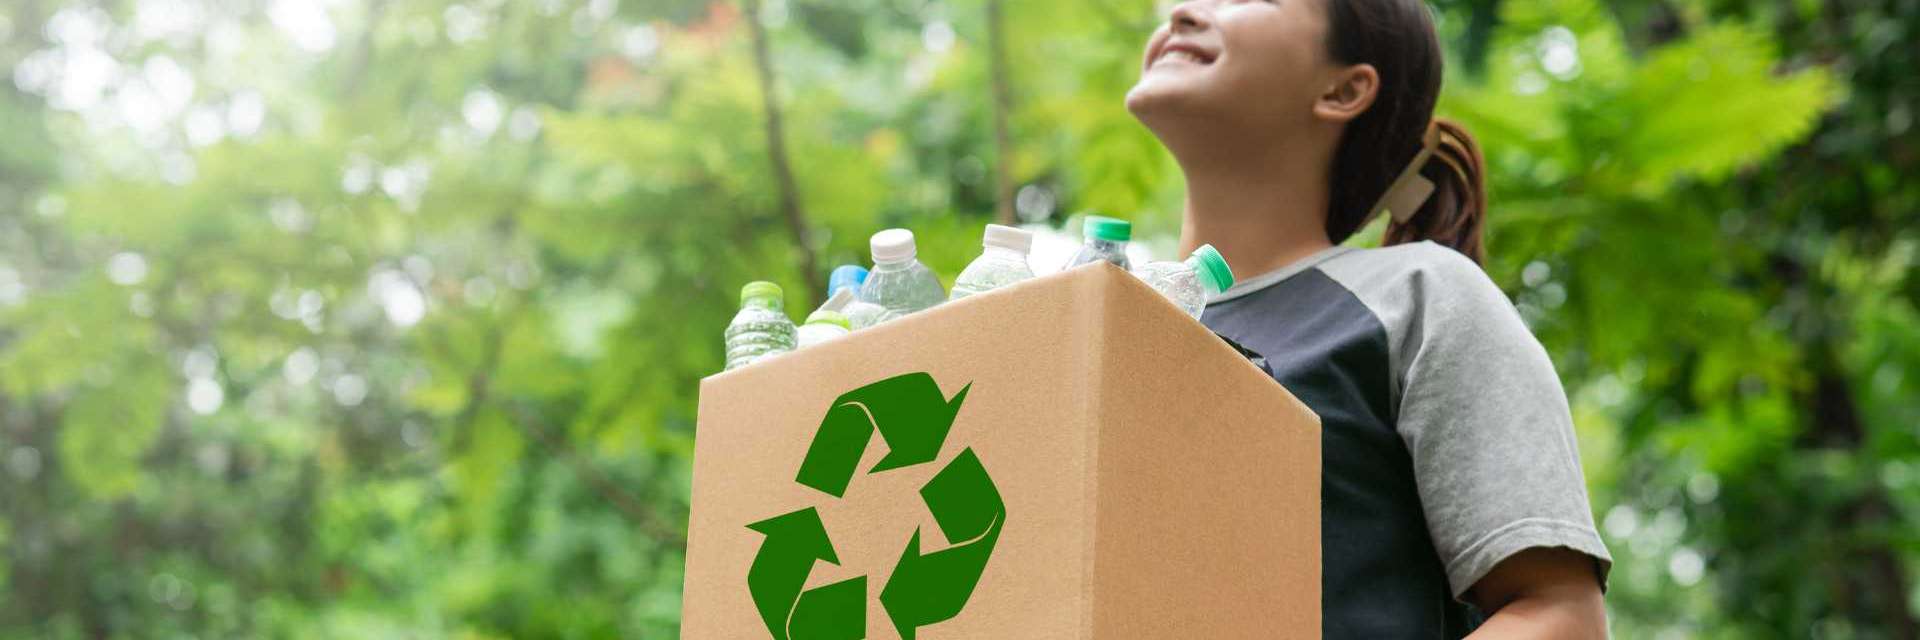 pessoa segurando uma caixa de papelão com o símbolo de reciclagem, cheia de garrafas plásticas, em um ambiente natural com árvores ao fundo.